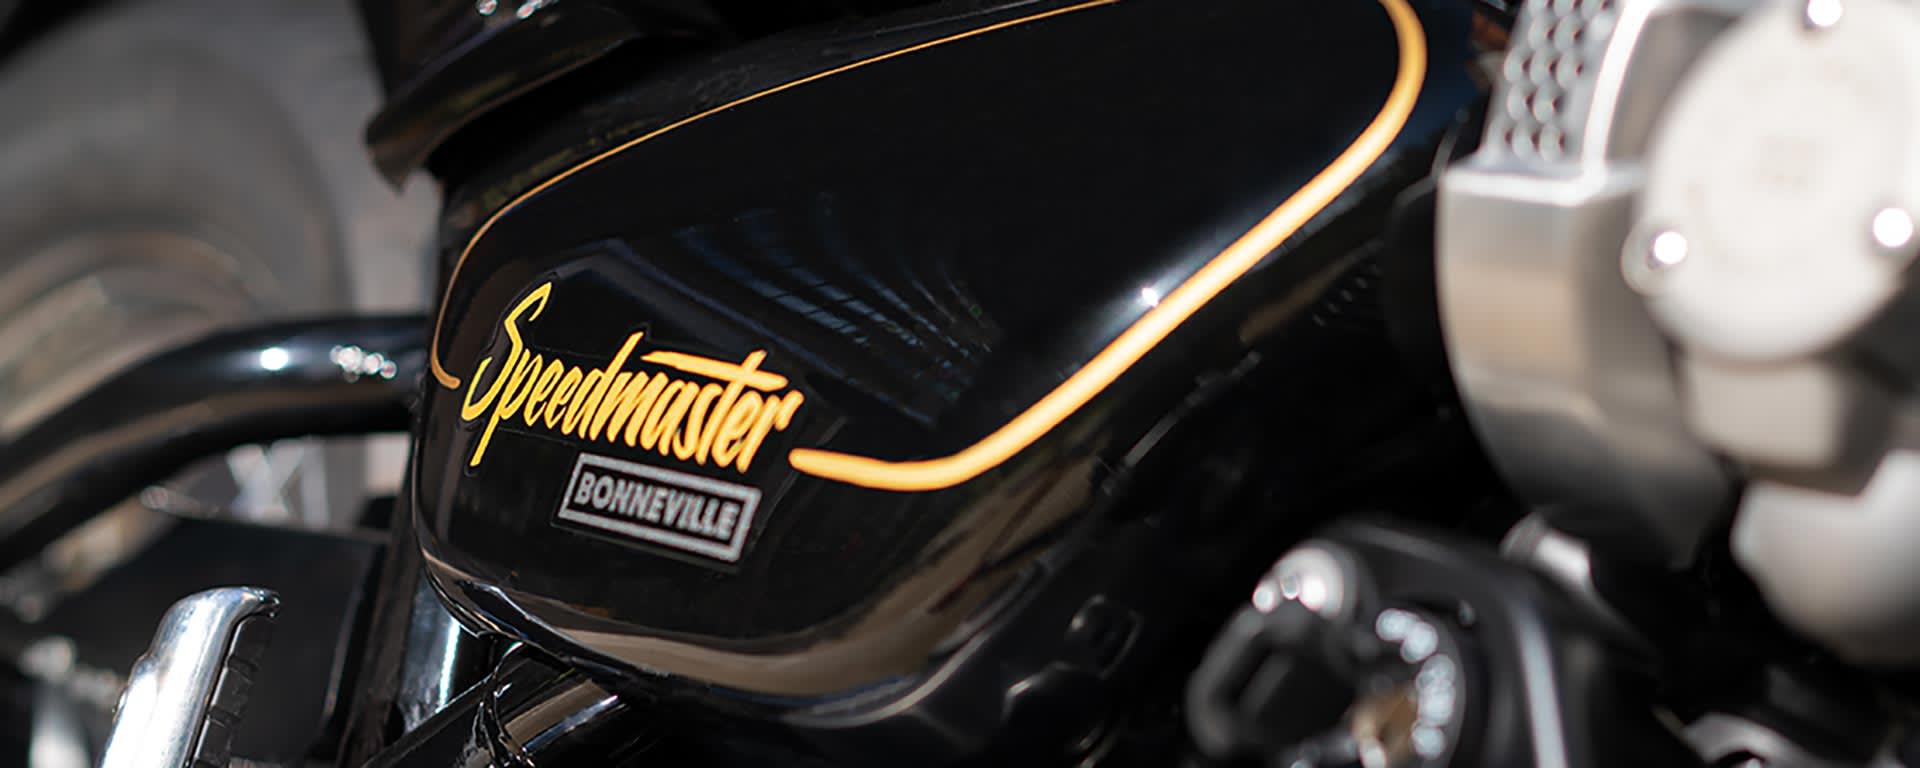 Bonneville Speedmaster Gold Line Edition)